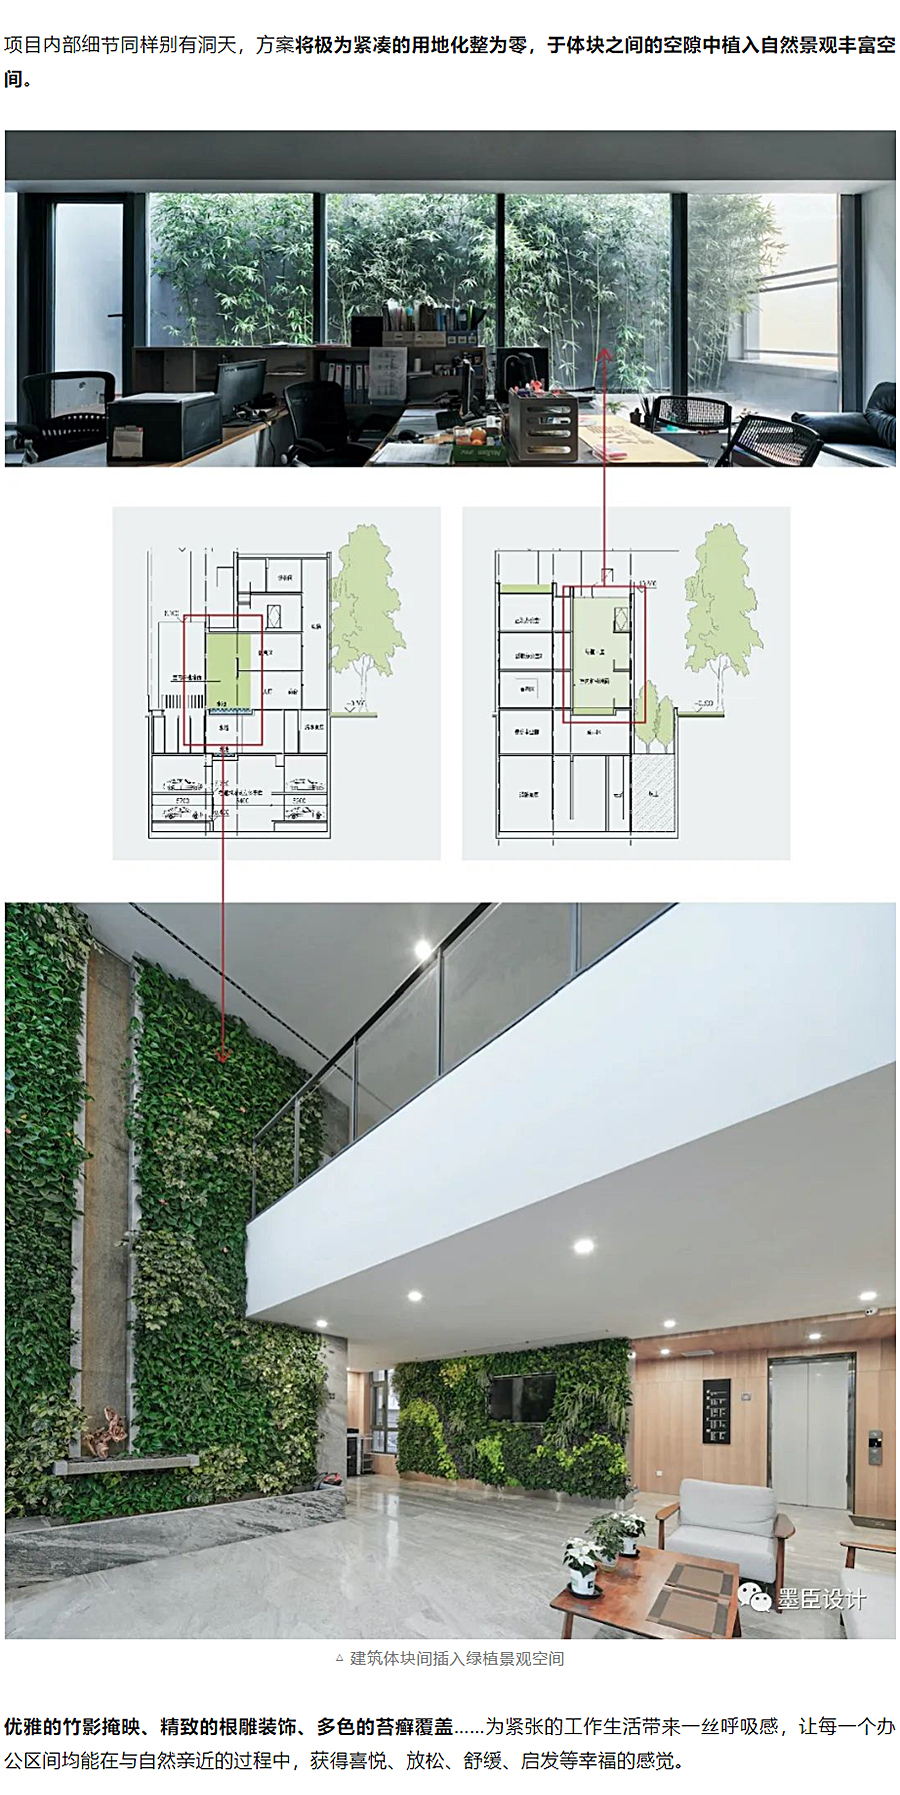 生态办公的游园序列-_-北京花木公司办公楼改造_0020_图层-21.jpg